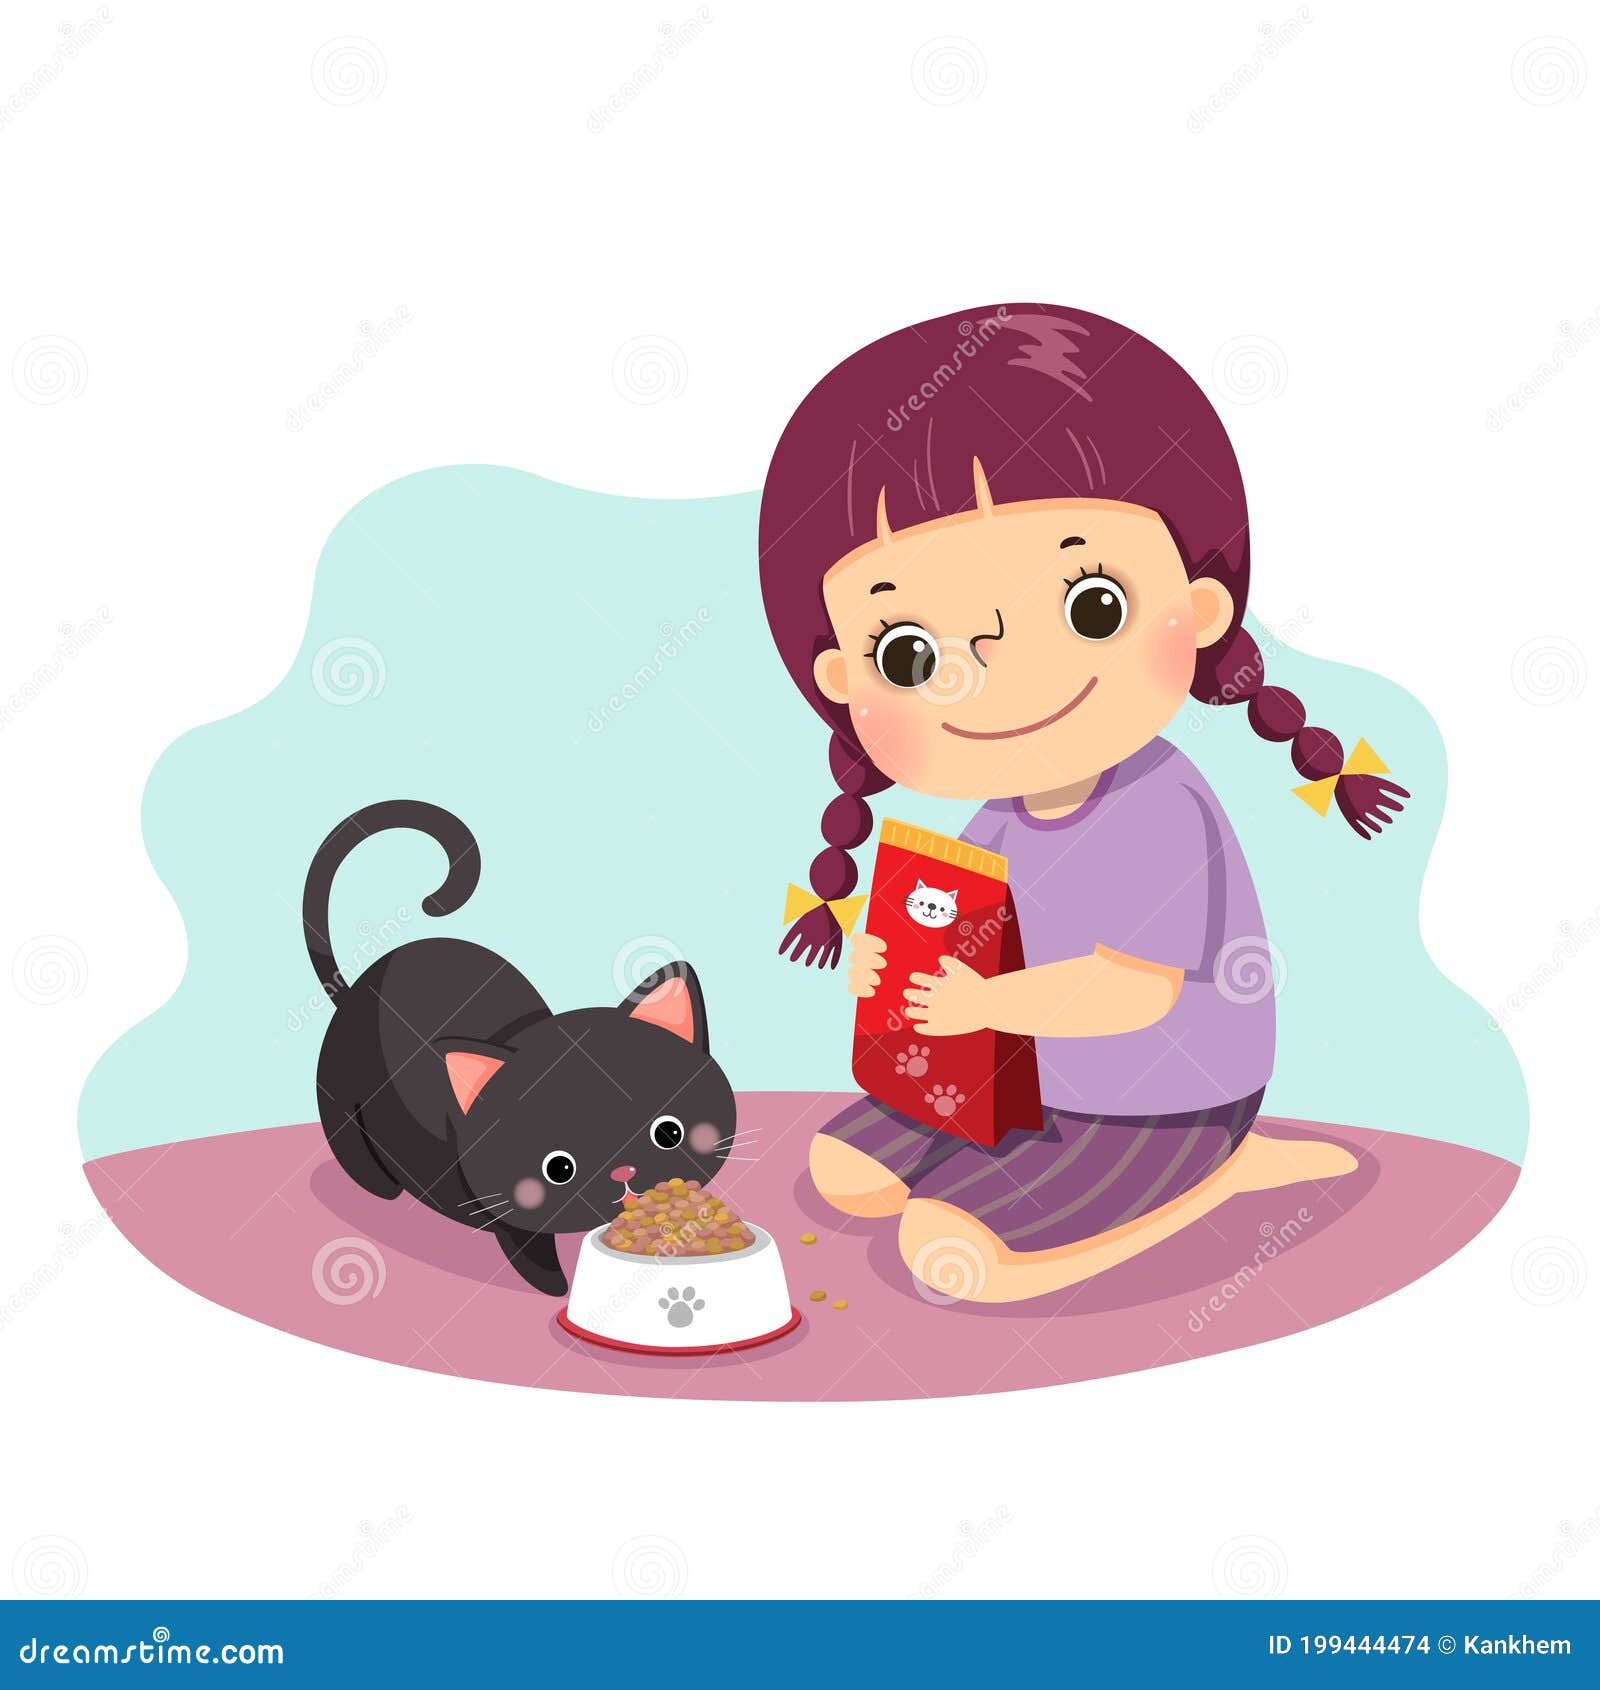 고양이에게 먹이를 주는 소녀 일러스트, 소녀, 고양이, 만화 PNG 일러스트 및 PSD 이미지 무료 다운로드 - Pngtree